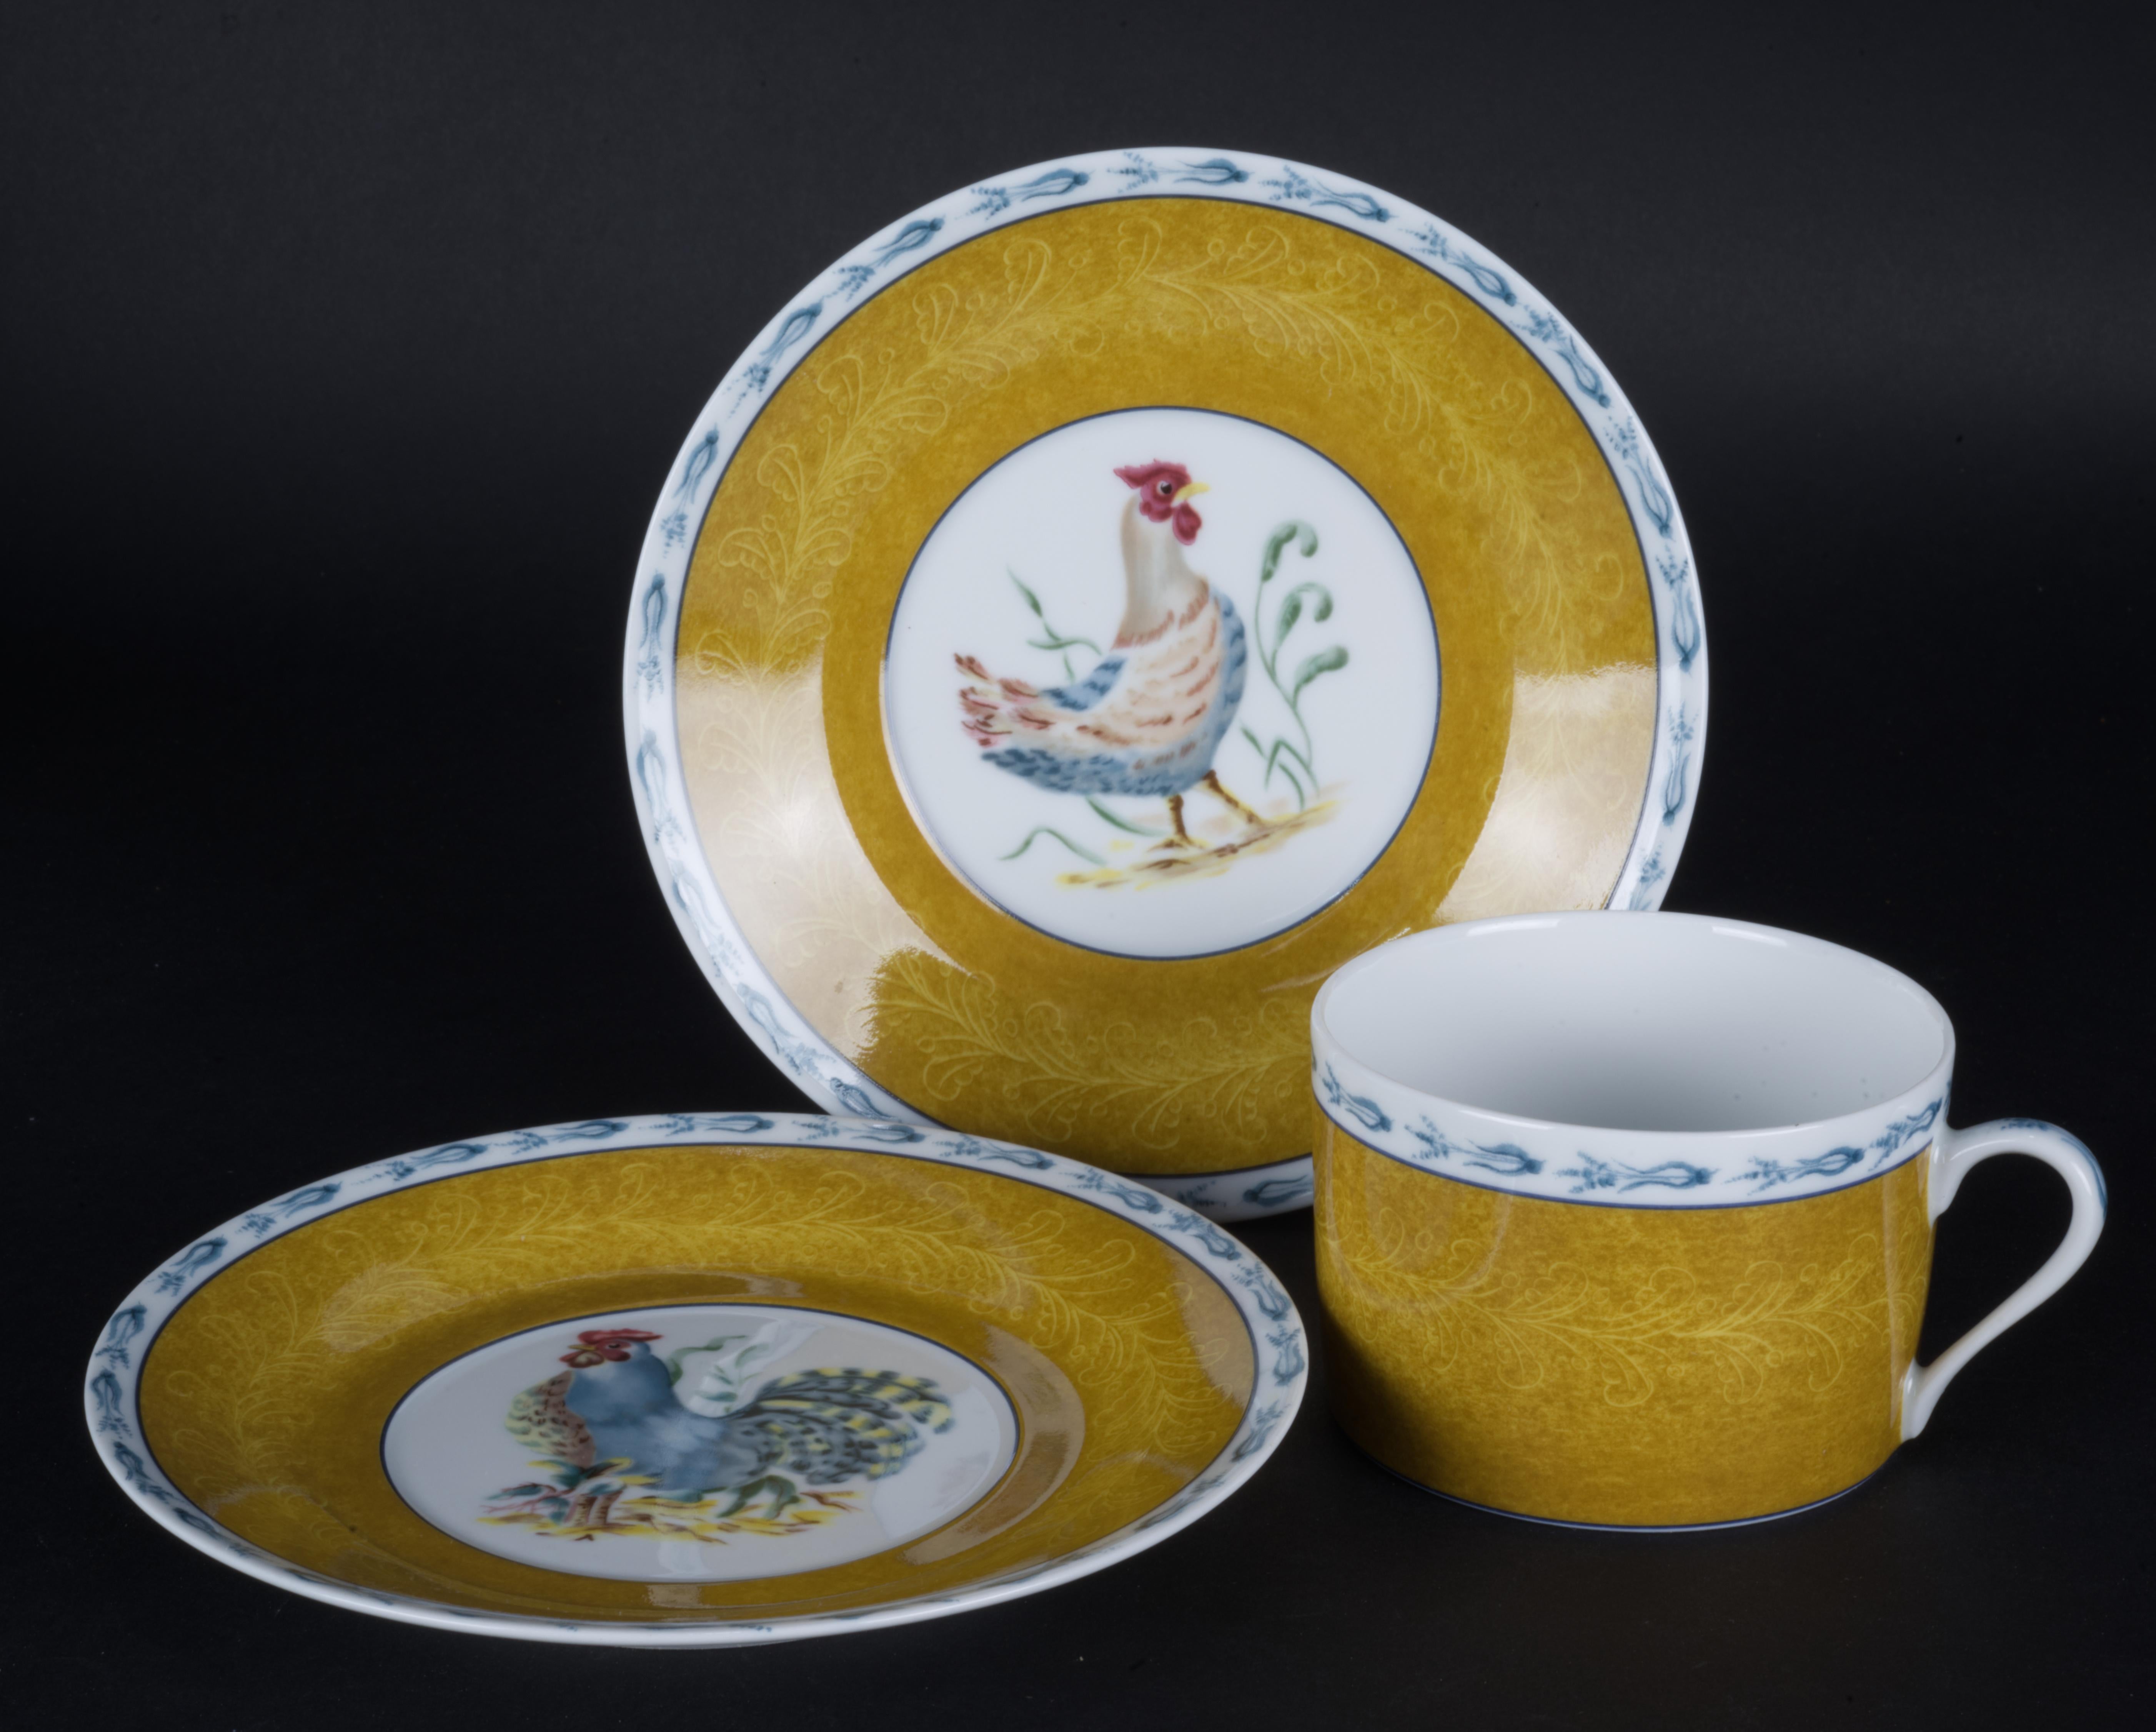 
Les tasses et soucoupes au motif Basse Cour de Pierre Frey ont été fabriquées en France par Porcelaine de Limoges. L'ensemble se compose d'une tasse et de deux soucoupes avec des décors centraux différents - 1 poule et 1 coq.

Basse Cour est un